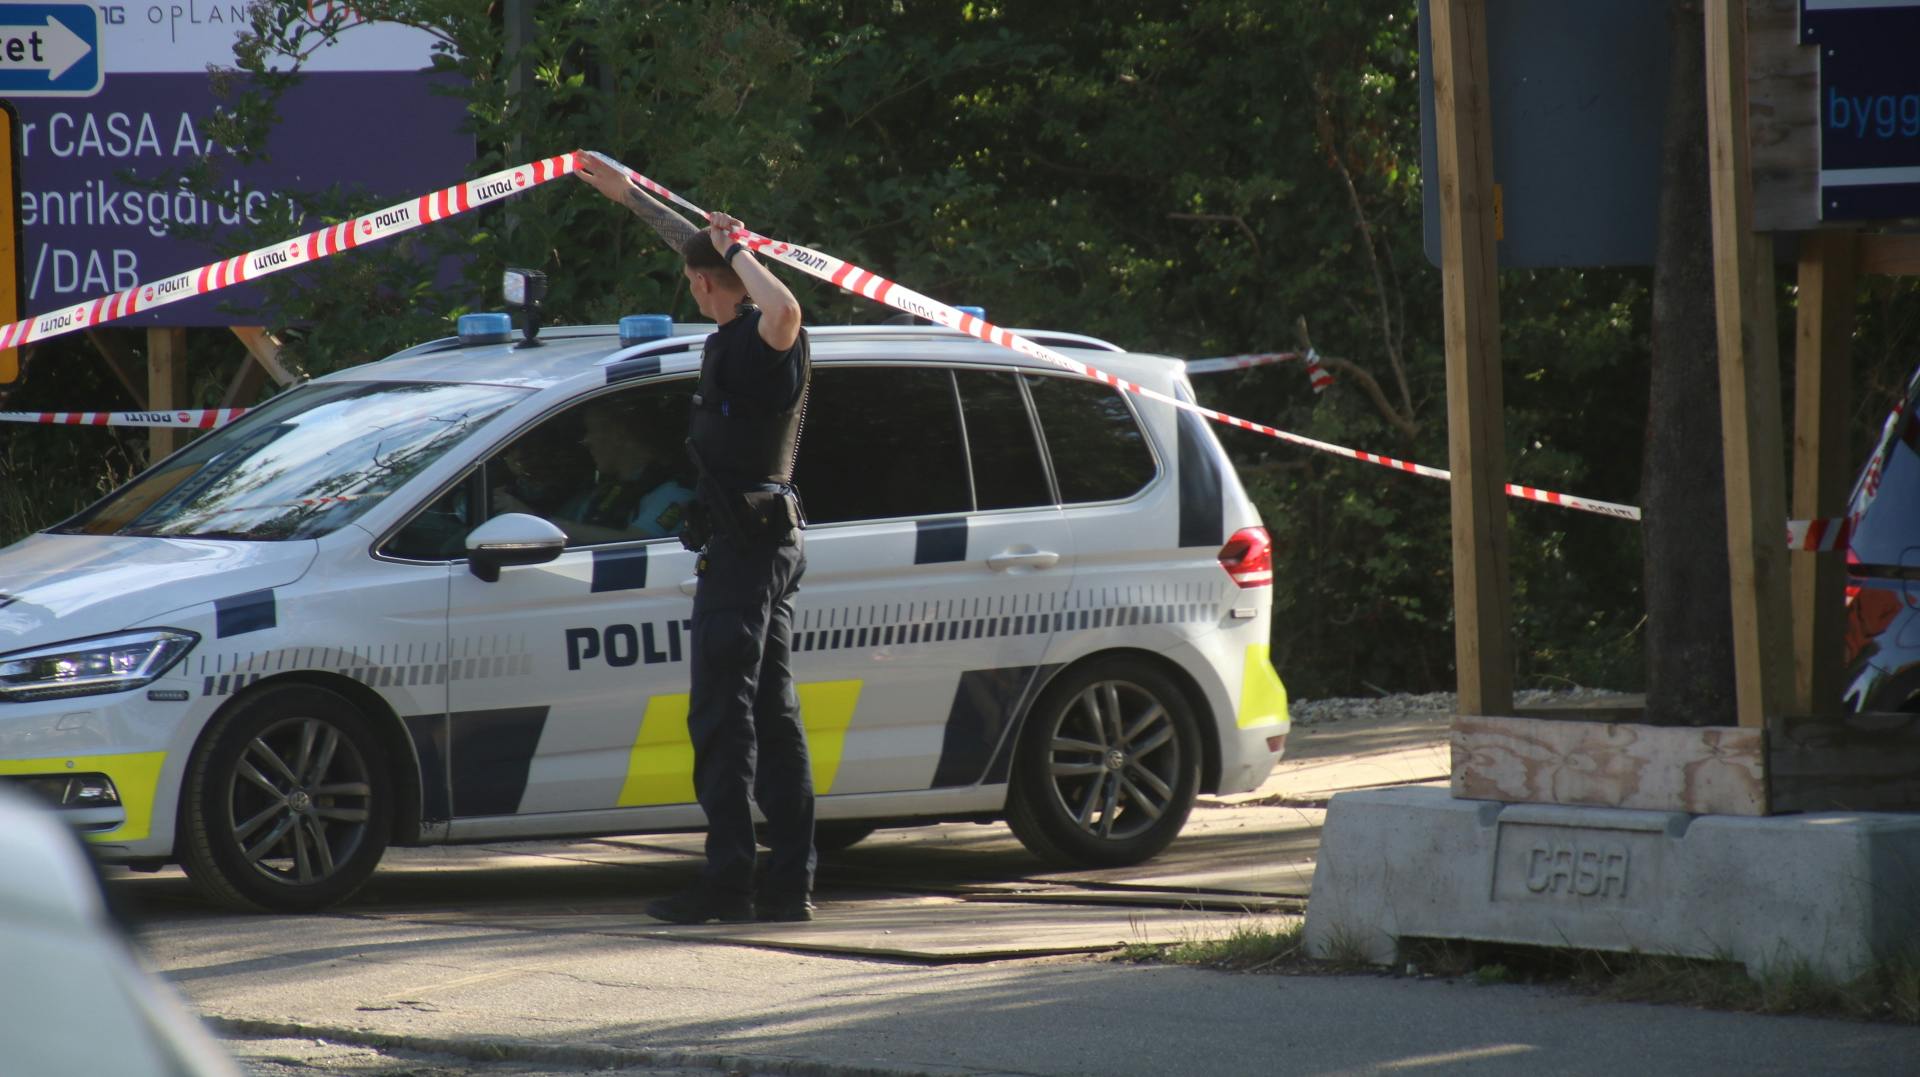 Politiet var tirsdag morgen massivt til stede på en byggeplads i Valby, hvor der var opstået slagsmål mellem håndværkerne på pladsen.